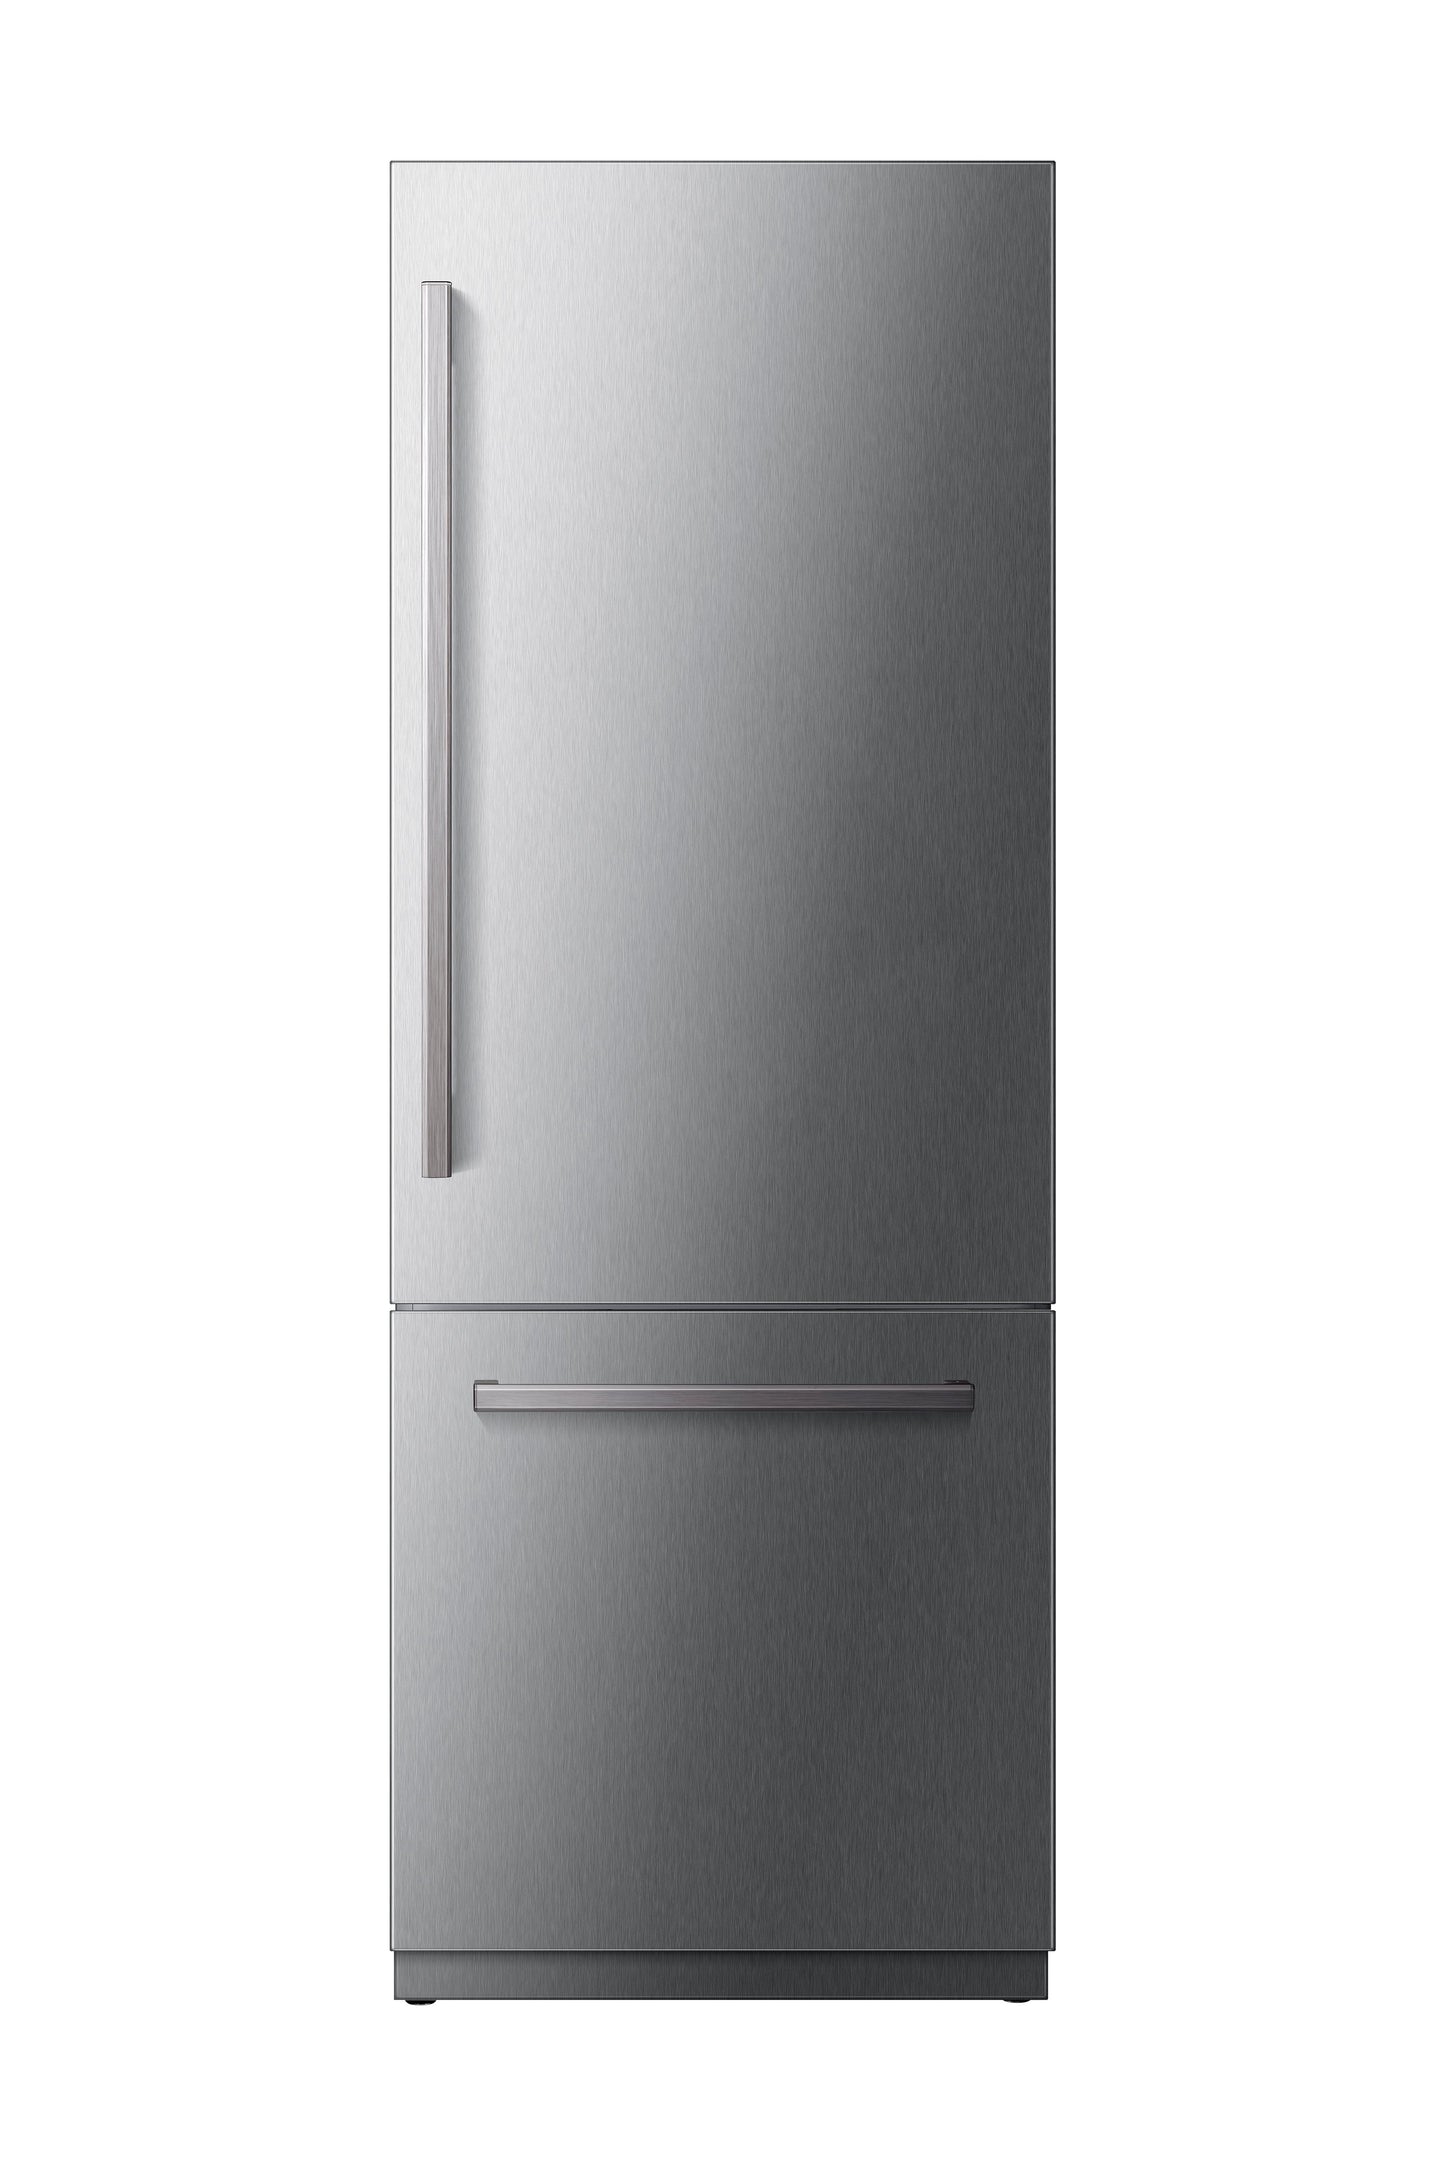 Kucht 30” Built-In, Counter Depth, Panel Ready, Single Door Refrigerator KR300SD